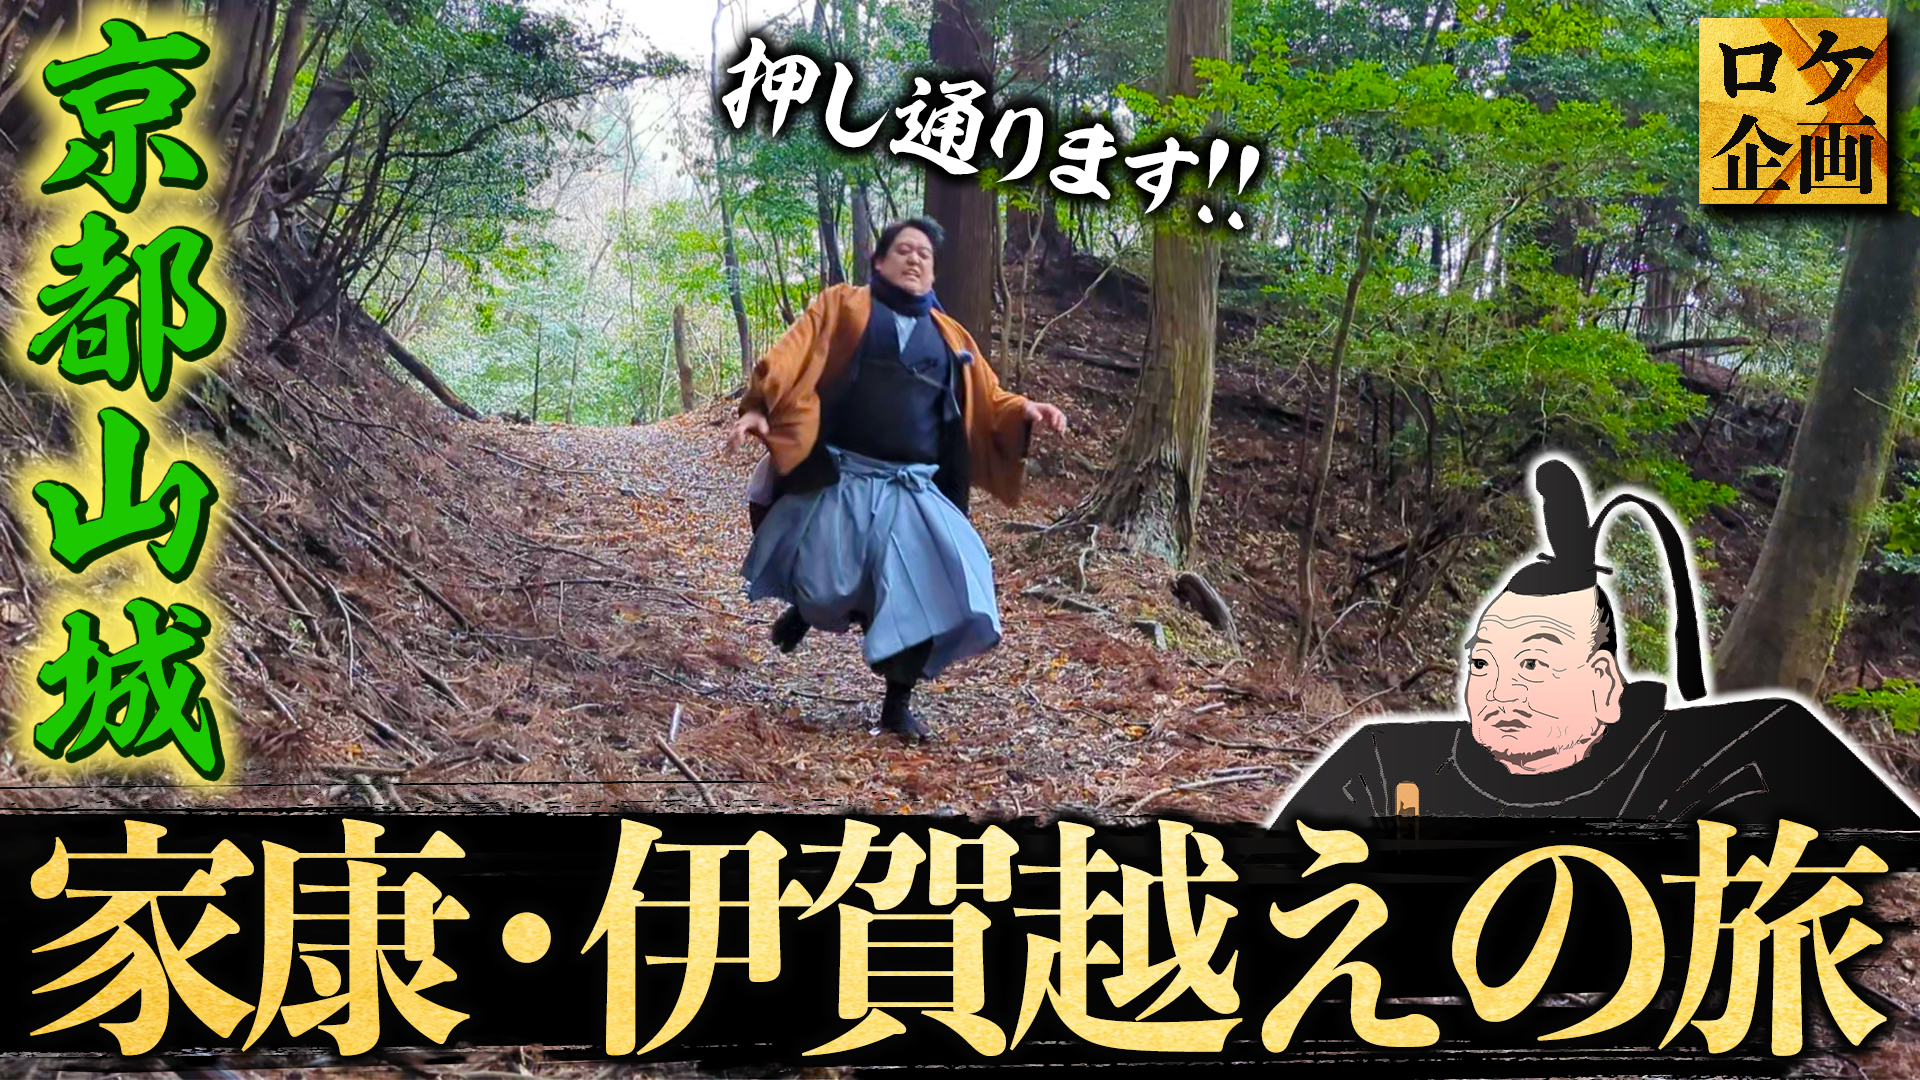 歴史解説YouTubeチャンネル「戦国BANASHI」のミスター武士道さんに、
「家康伊賀越え」を特集いただきました！！
